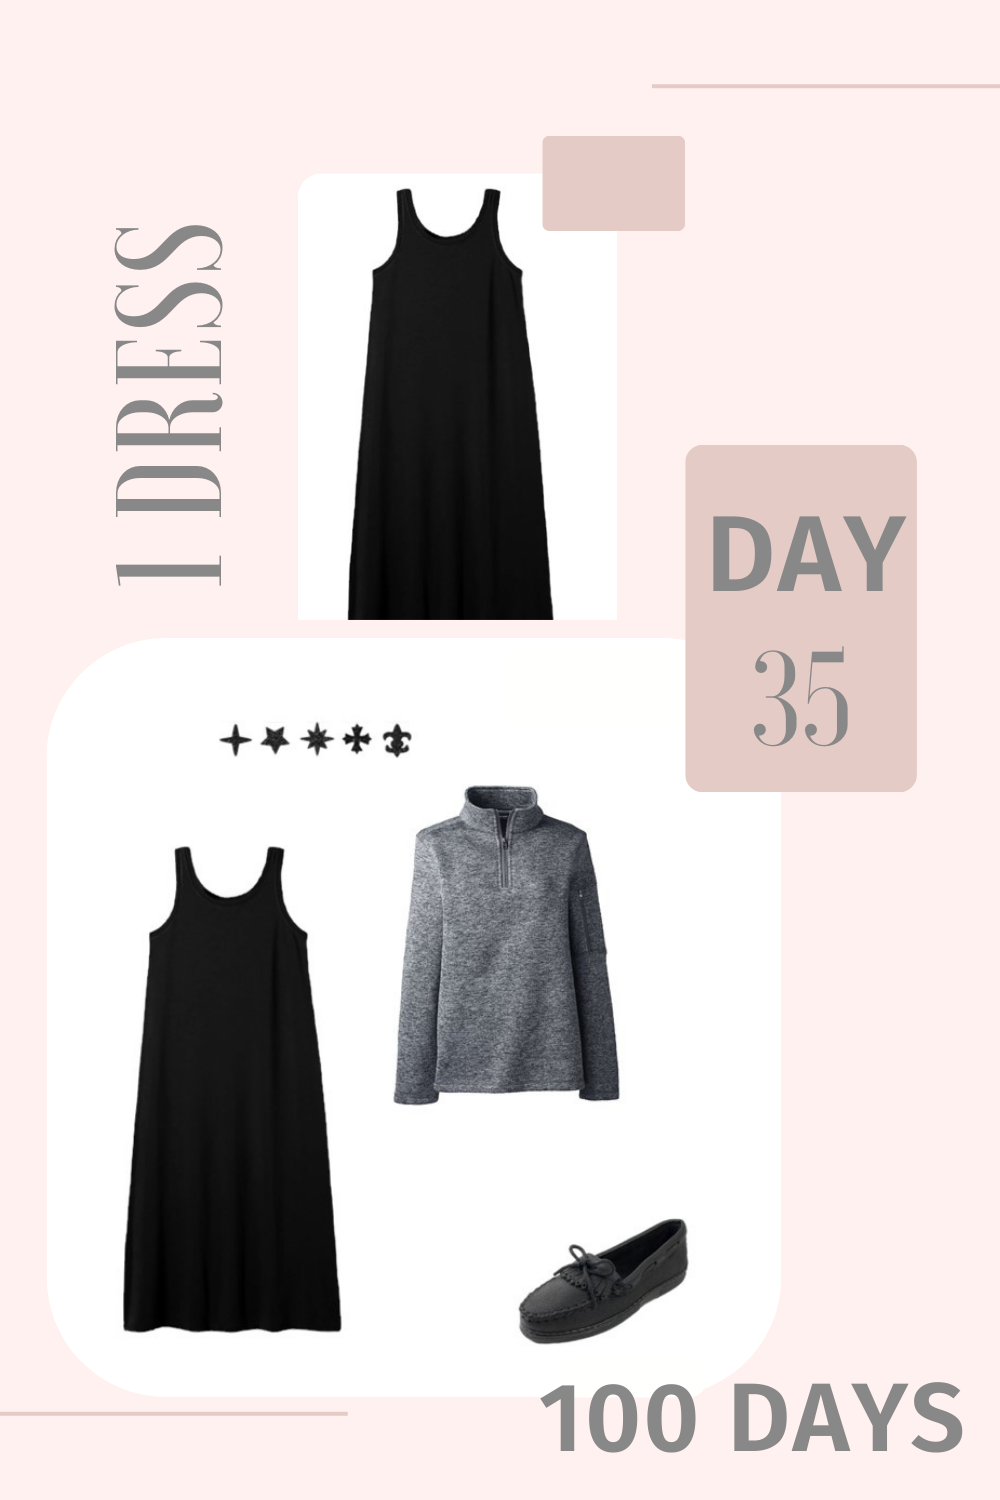 1 Dress 100 Days - Day 35